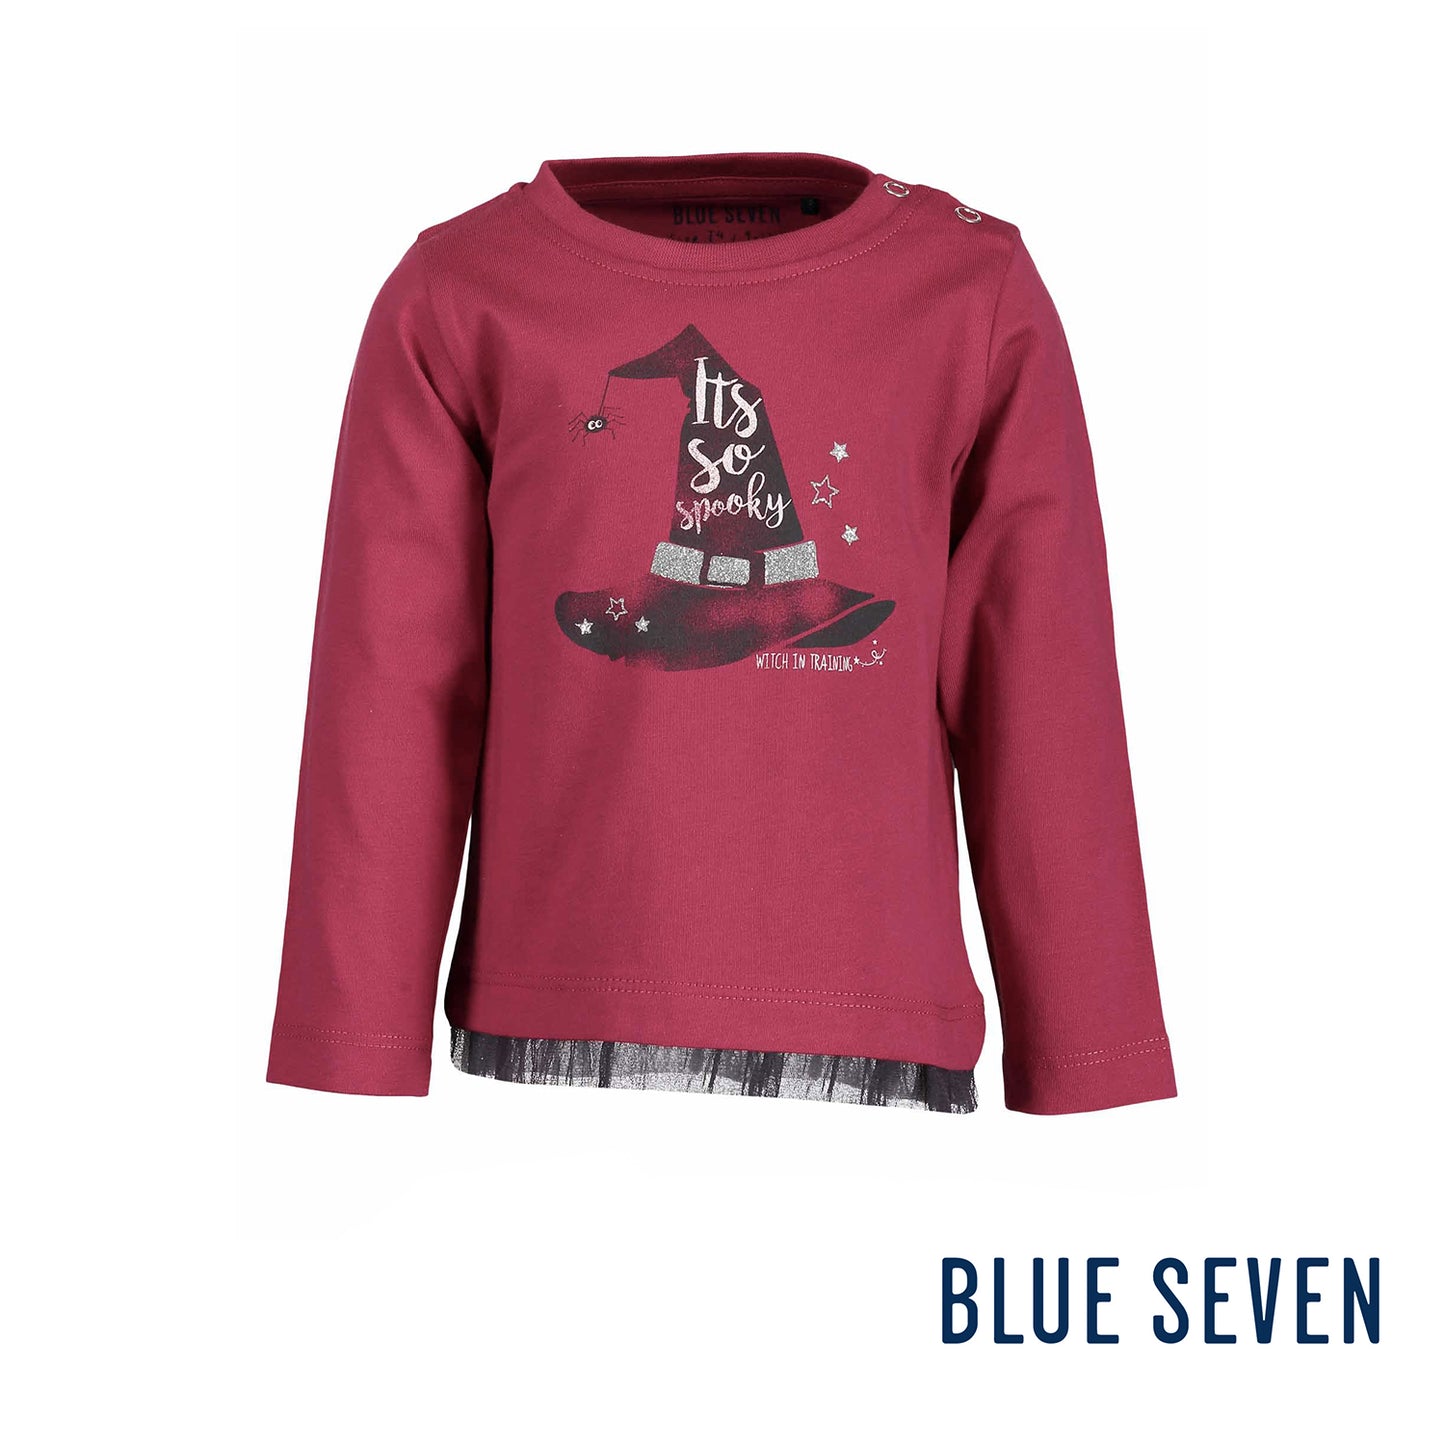 Blue Seven - Maglietta Maniche Lunghe Magenta Baby Bambina